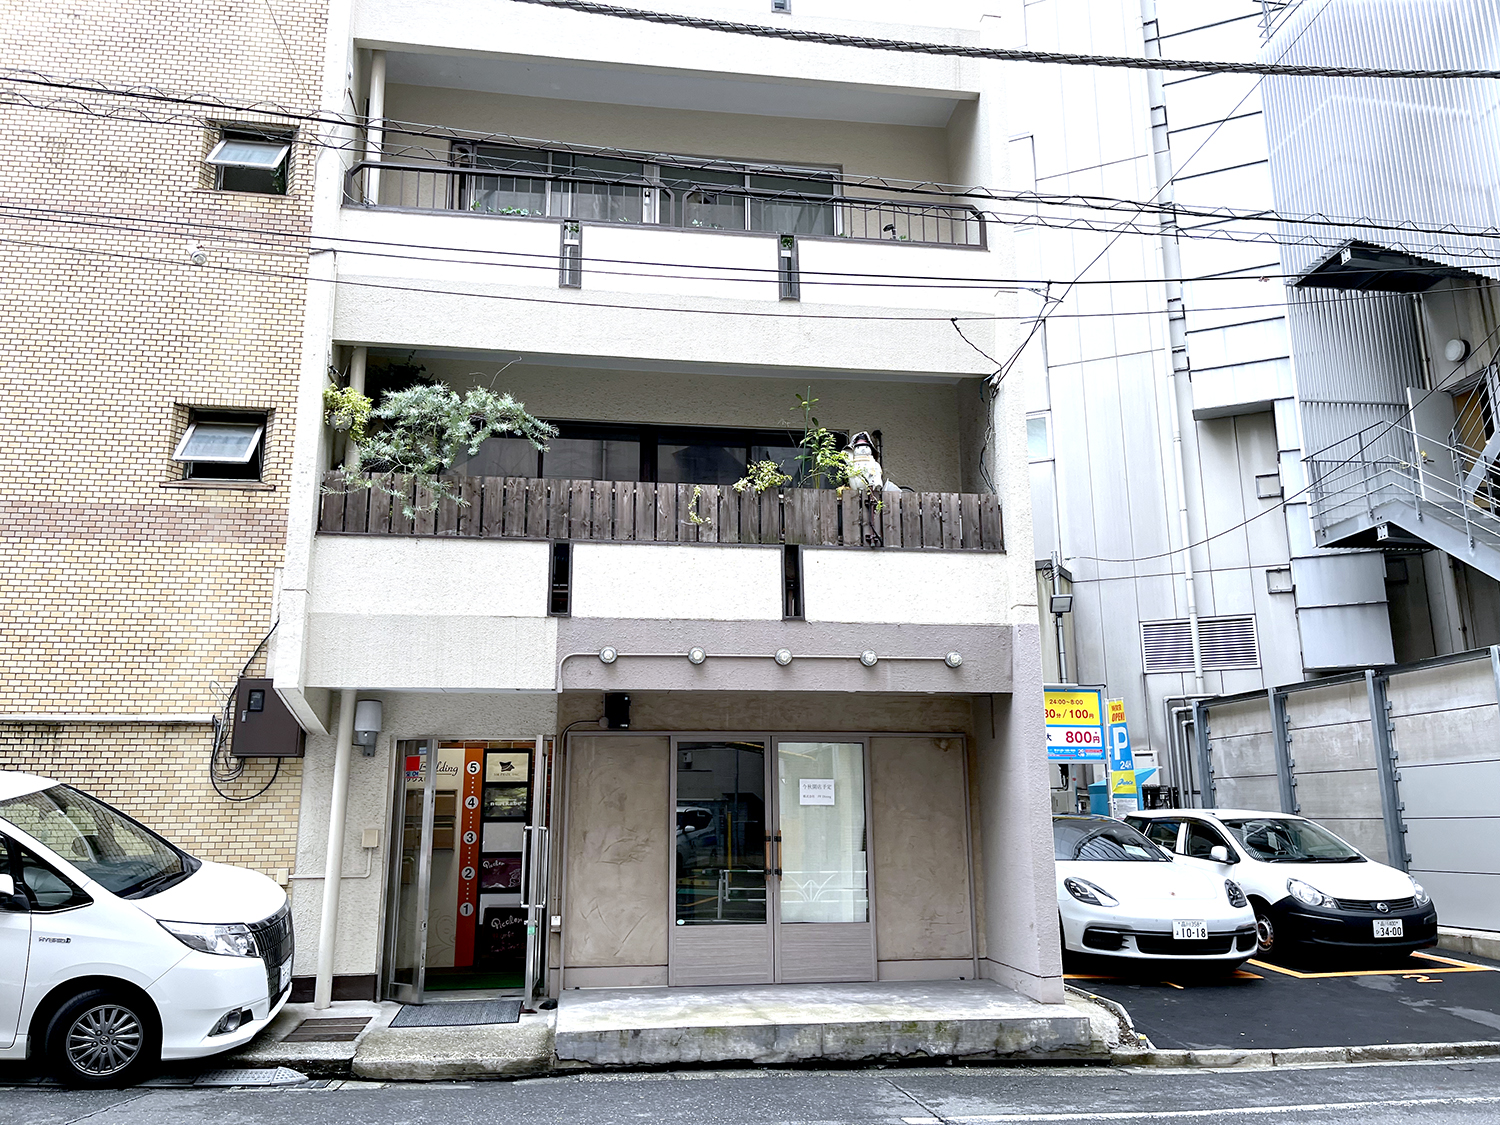 駒沢通り沿いにある『エニタイムフィットネス恵比寿店』の角を曲がってすぐある雑居ビル。